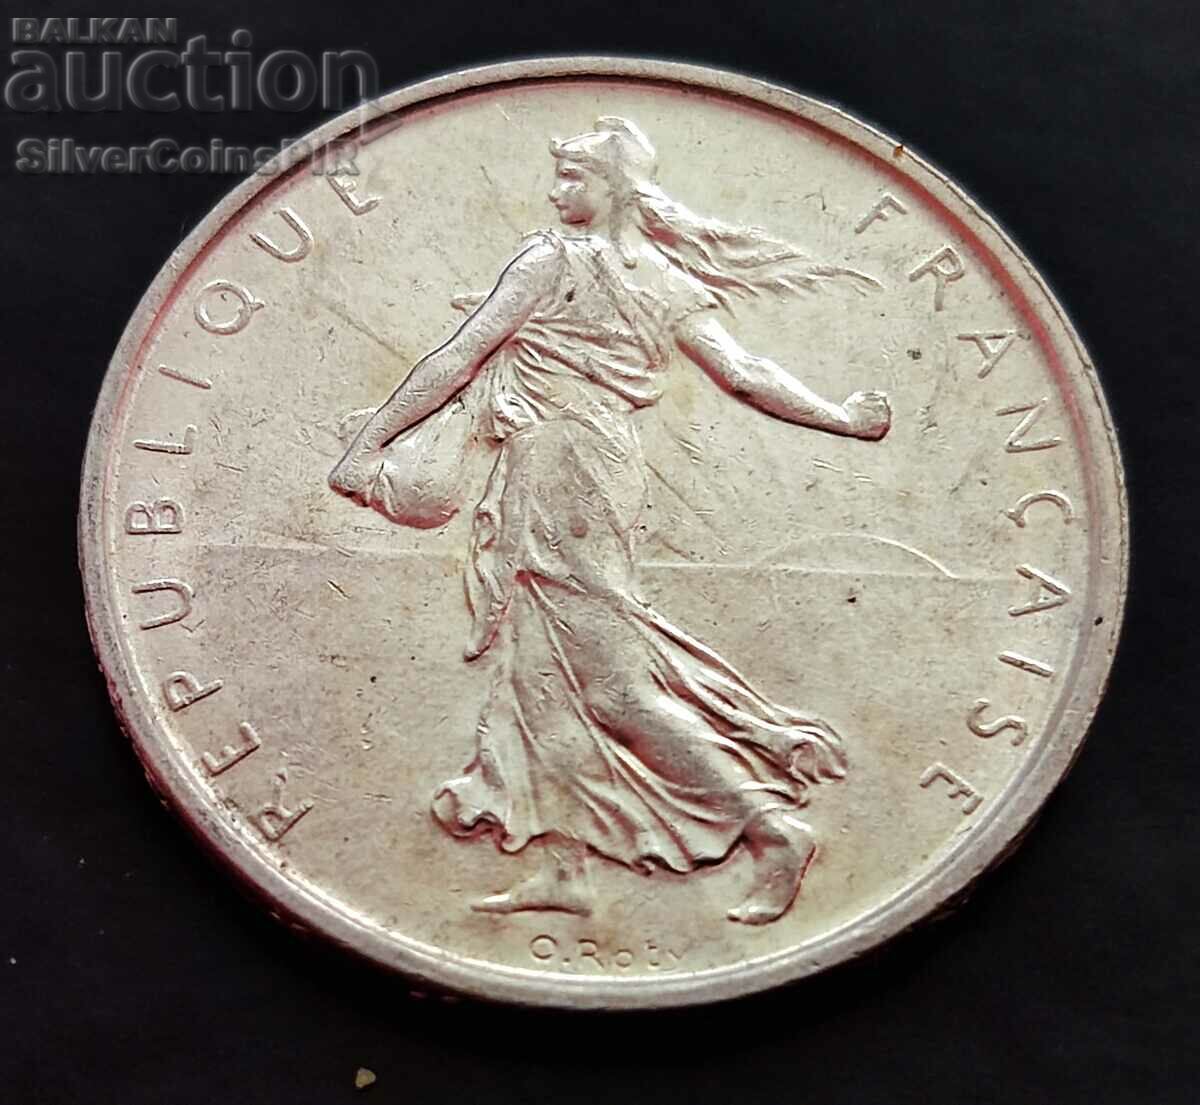 Silver 5 Francs 1963 France